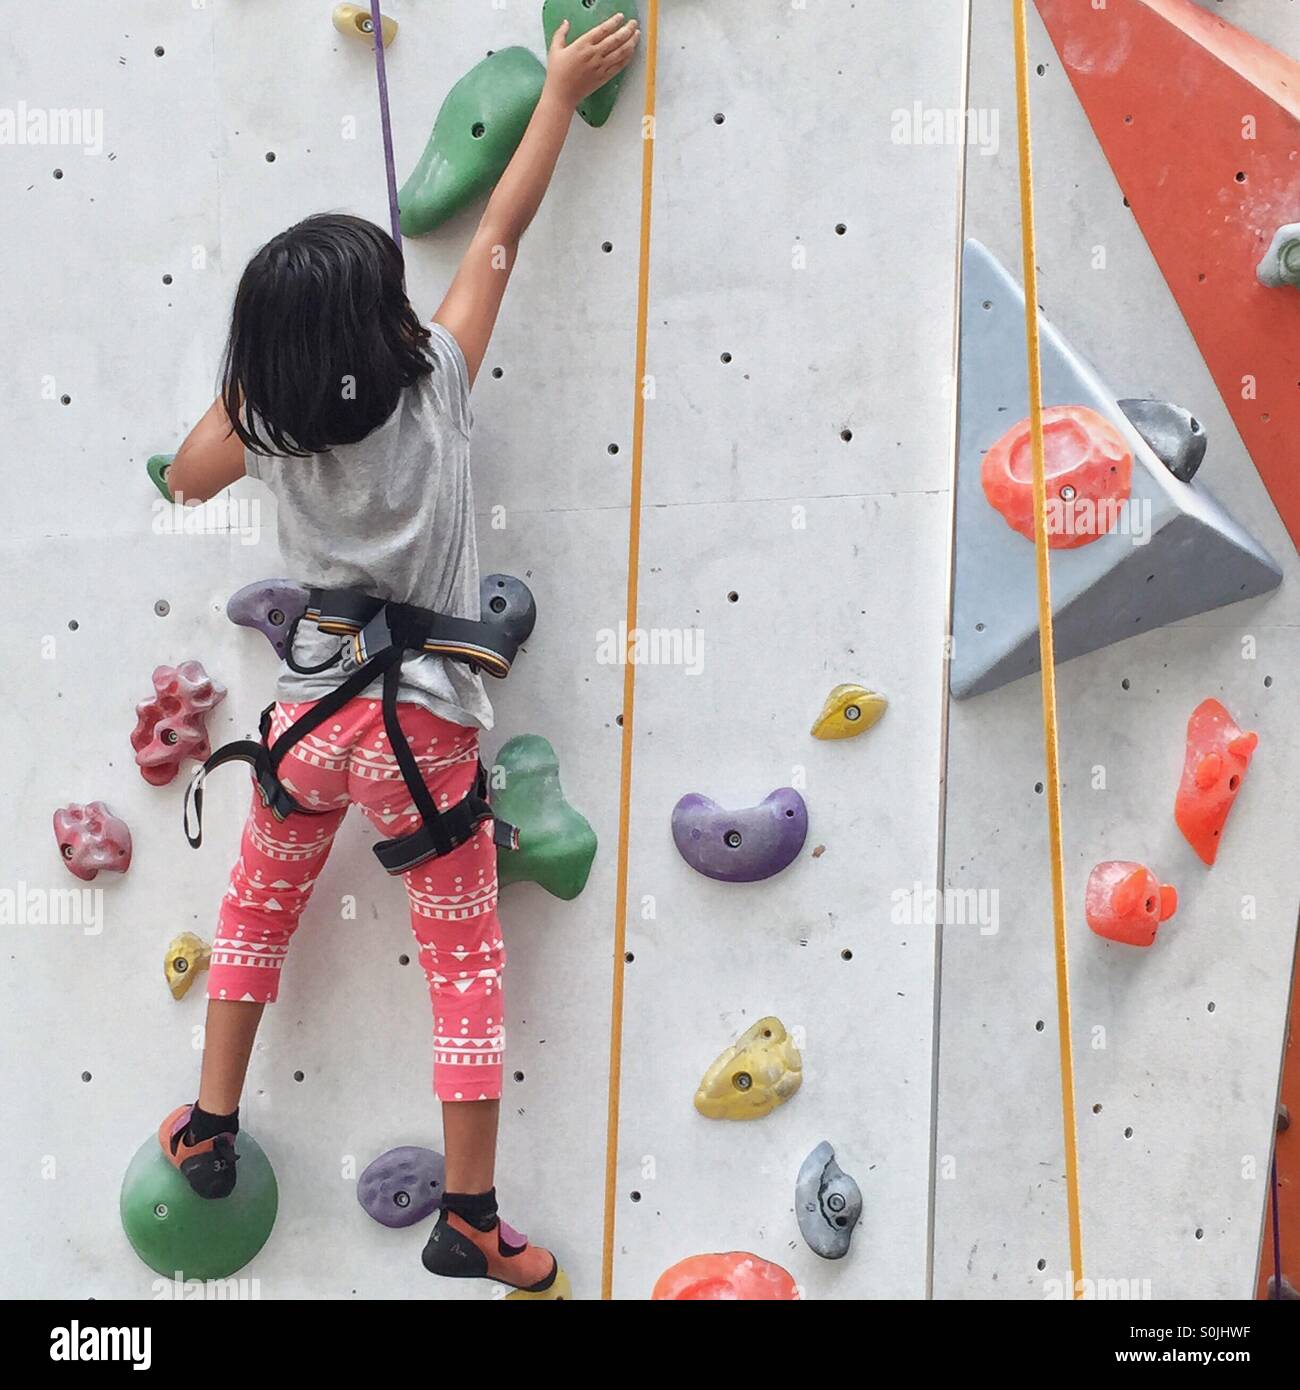 little girl climbing an indoor wall Stock Photo